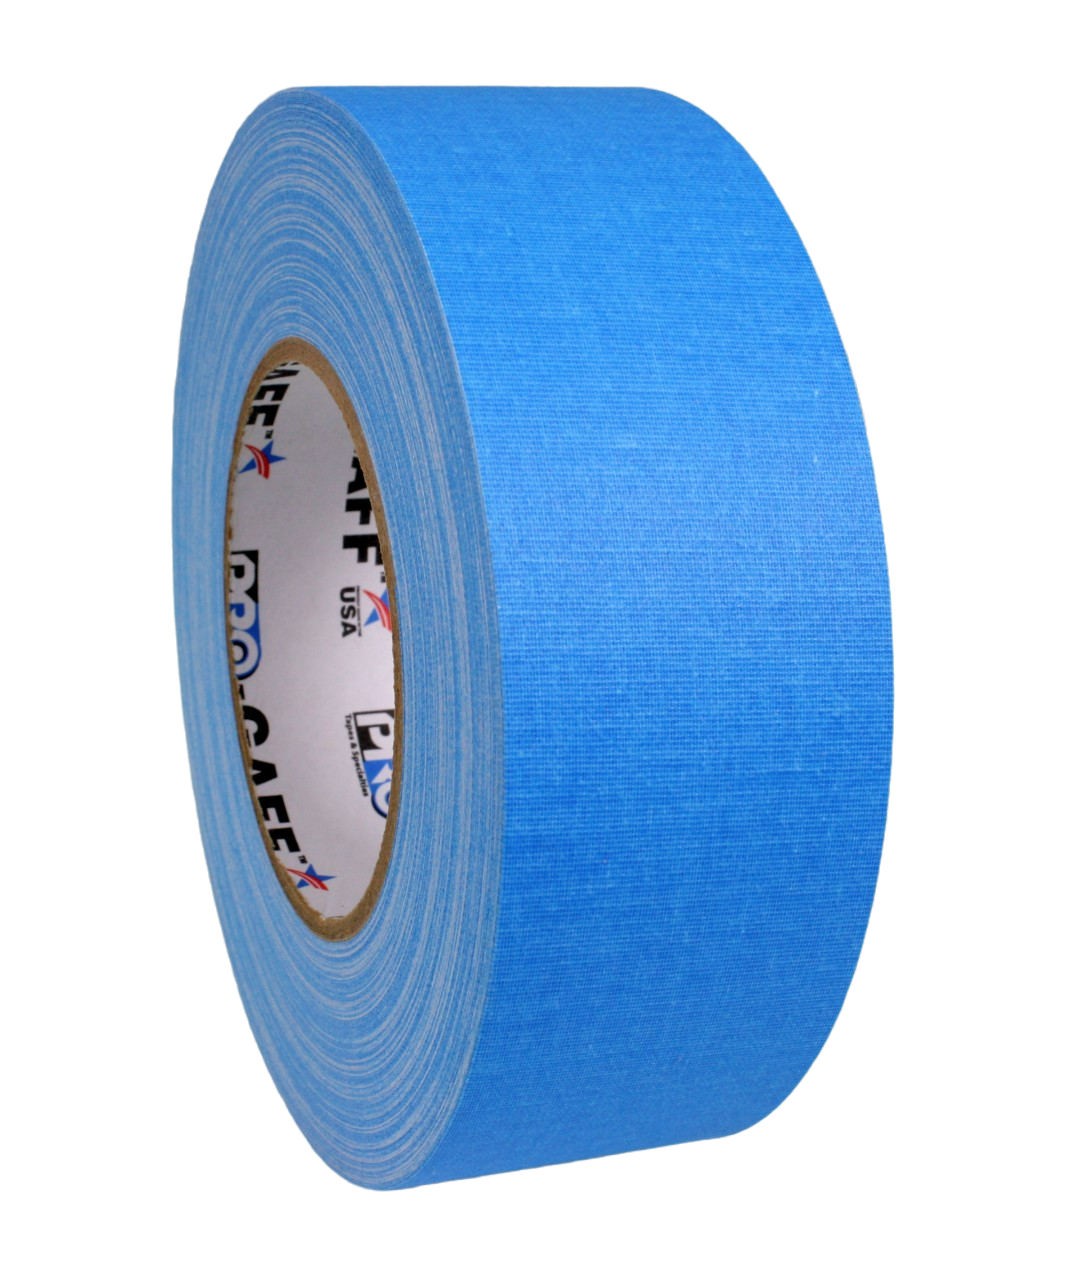 Pro Gaff 2", fluro blue, 45m roll